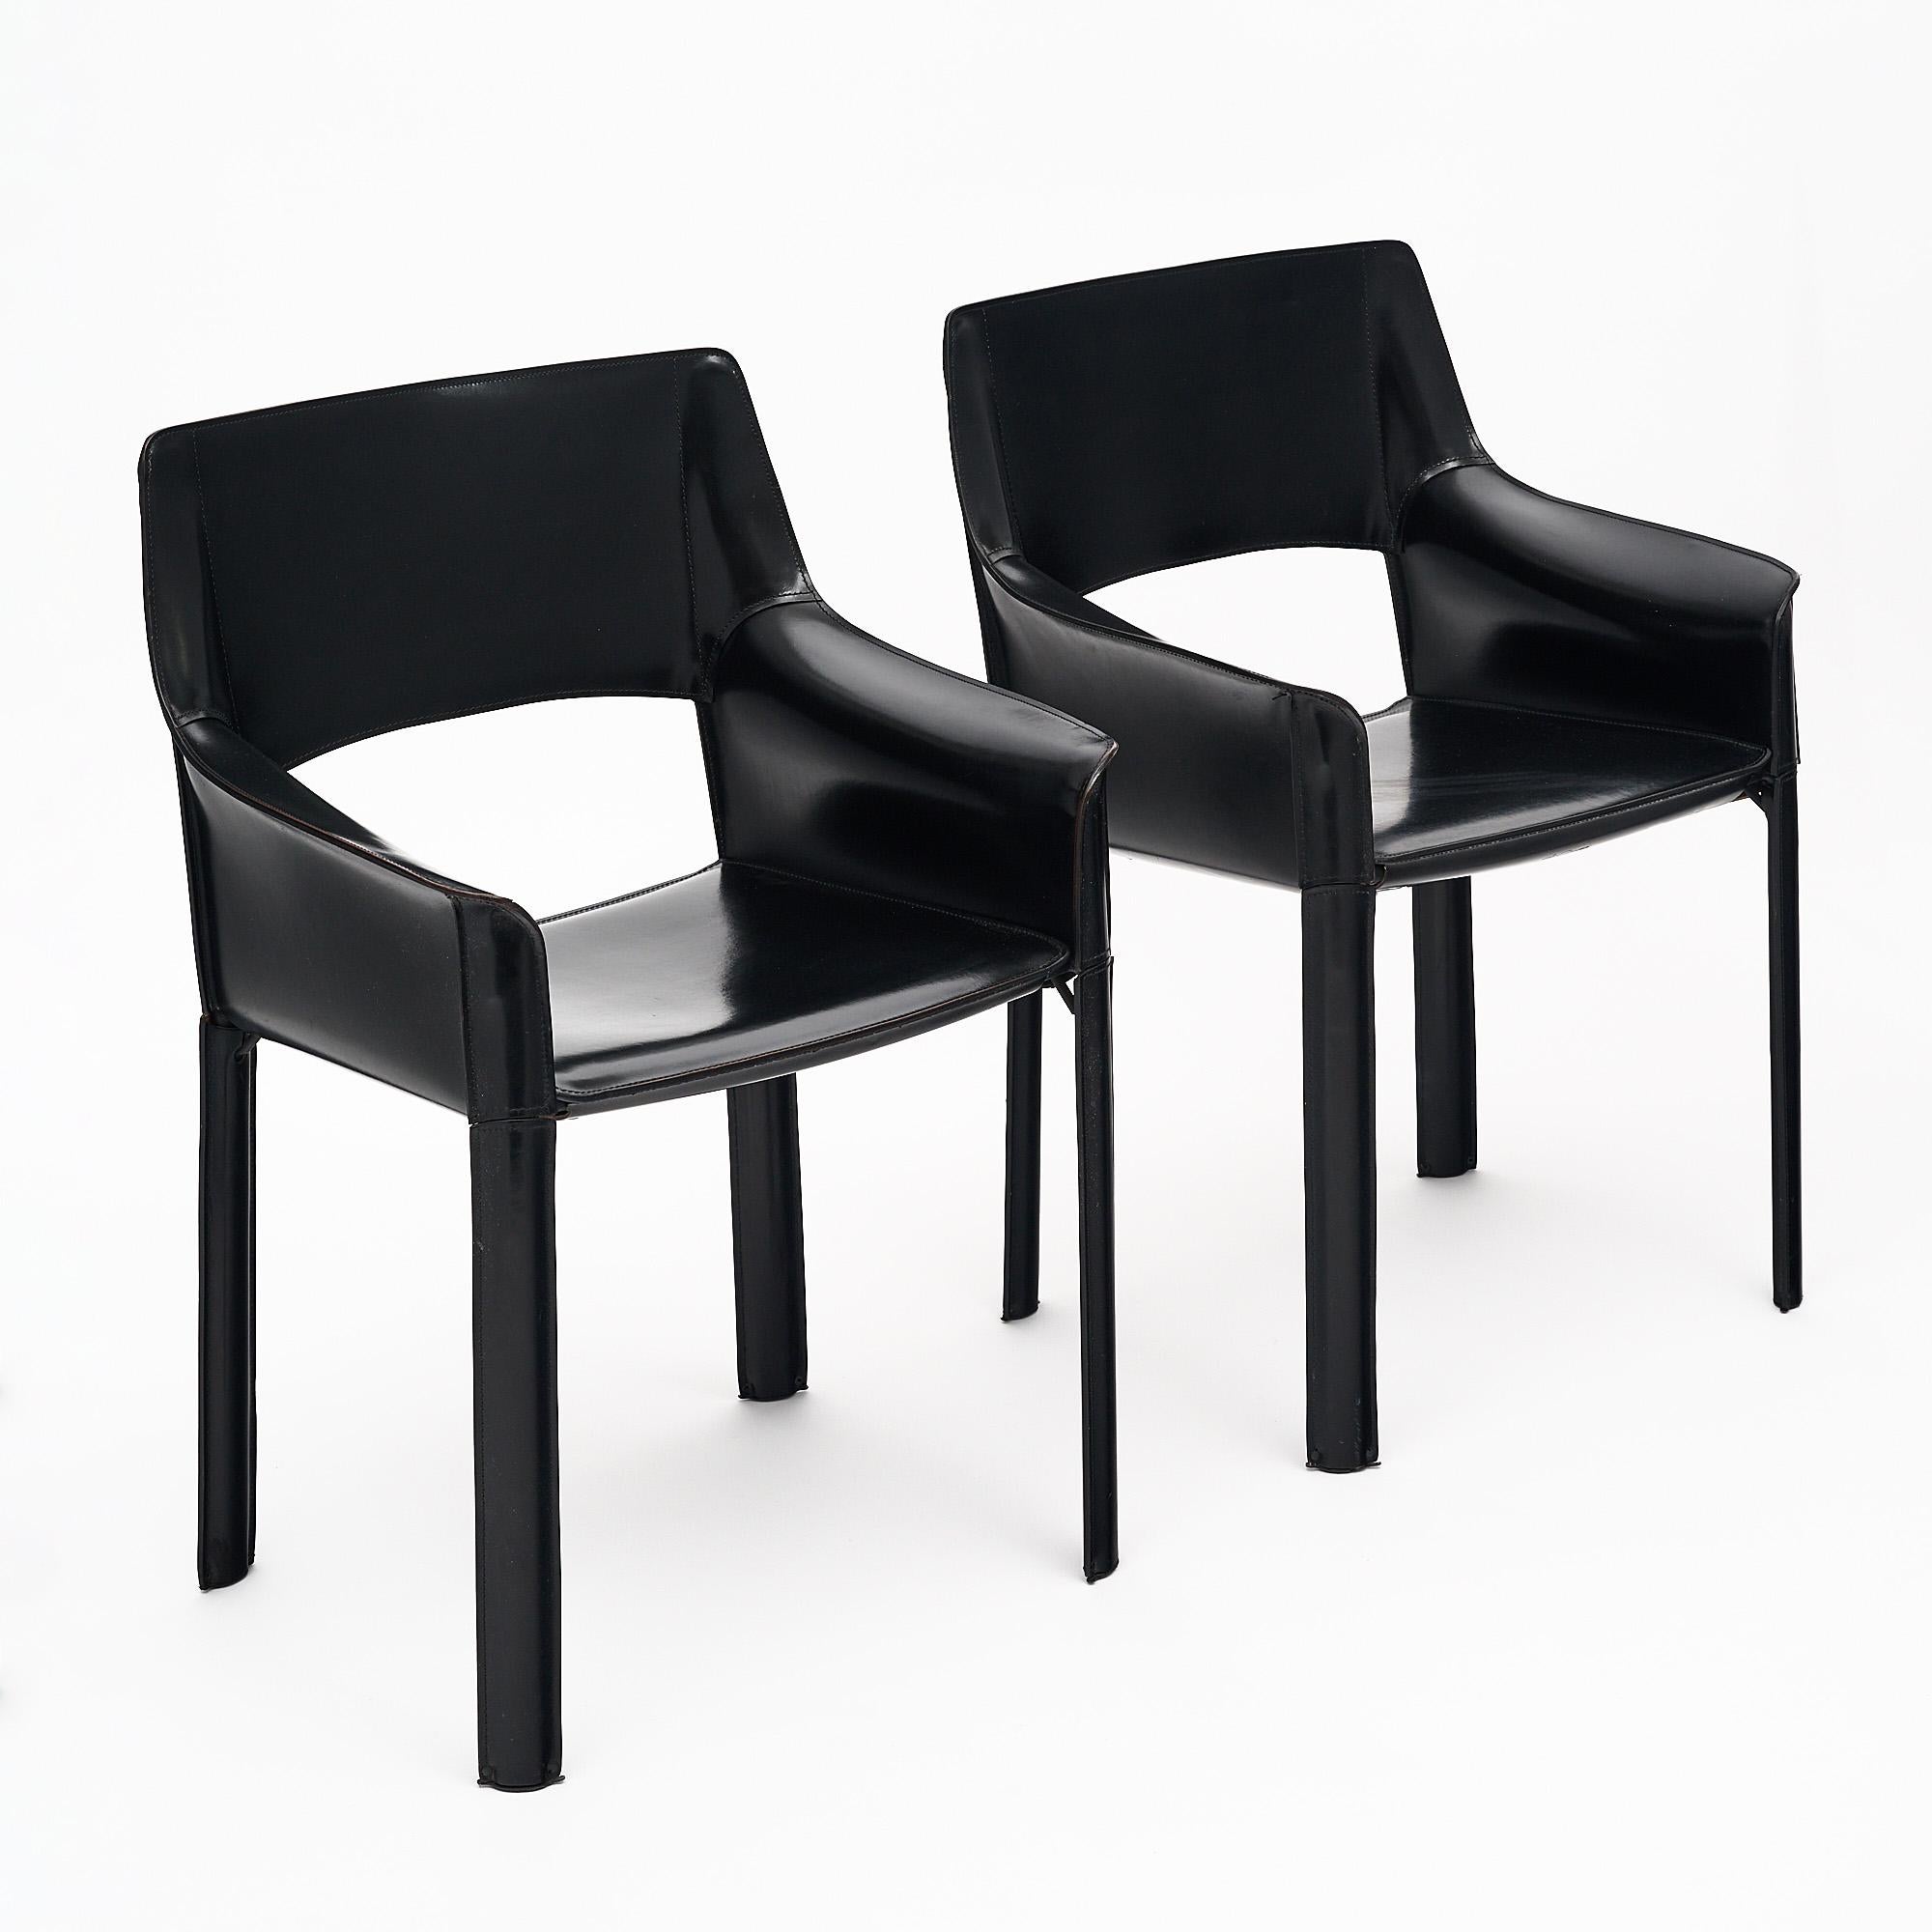 Ein Paar Sessel der brasilianischen Firma De Couro. Sie bestehen aus Stahlstrukturen und dickem, genähtem schwarzem Leder in hervorragendem Vintage-Zustand. Jeder Stuhl ist auf der Unterseite mit der Marke De Couro of Brazil versehen. Dieses